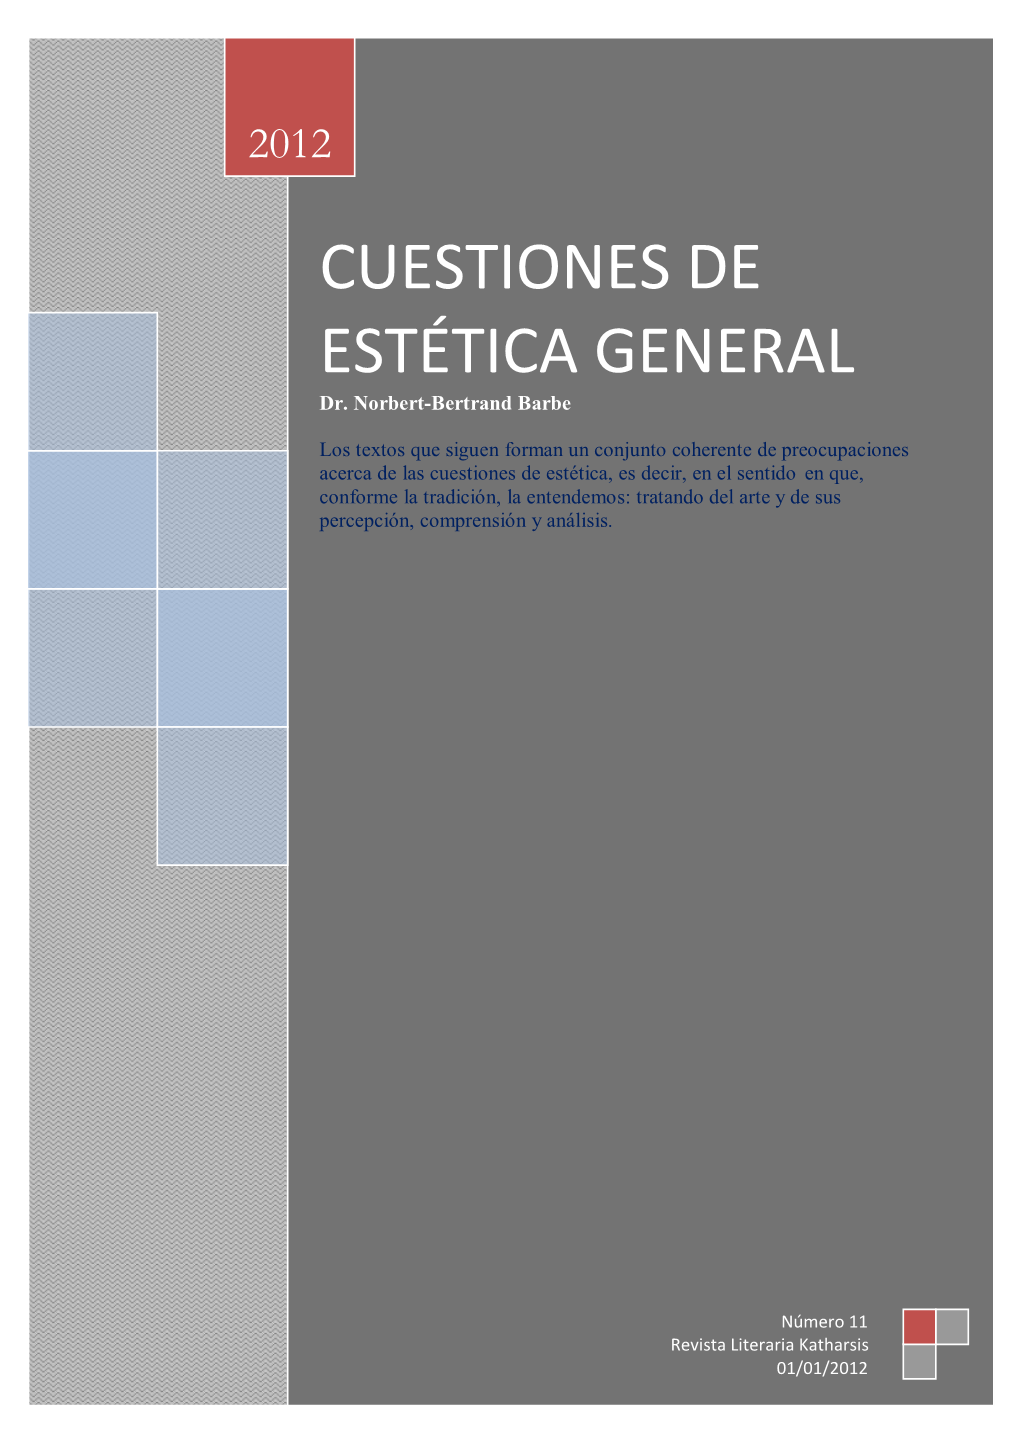 CUESTIONES DE ESTÉTICA GENERAL Dr